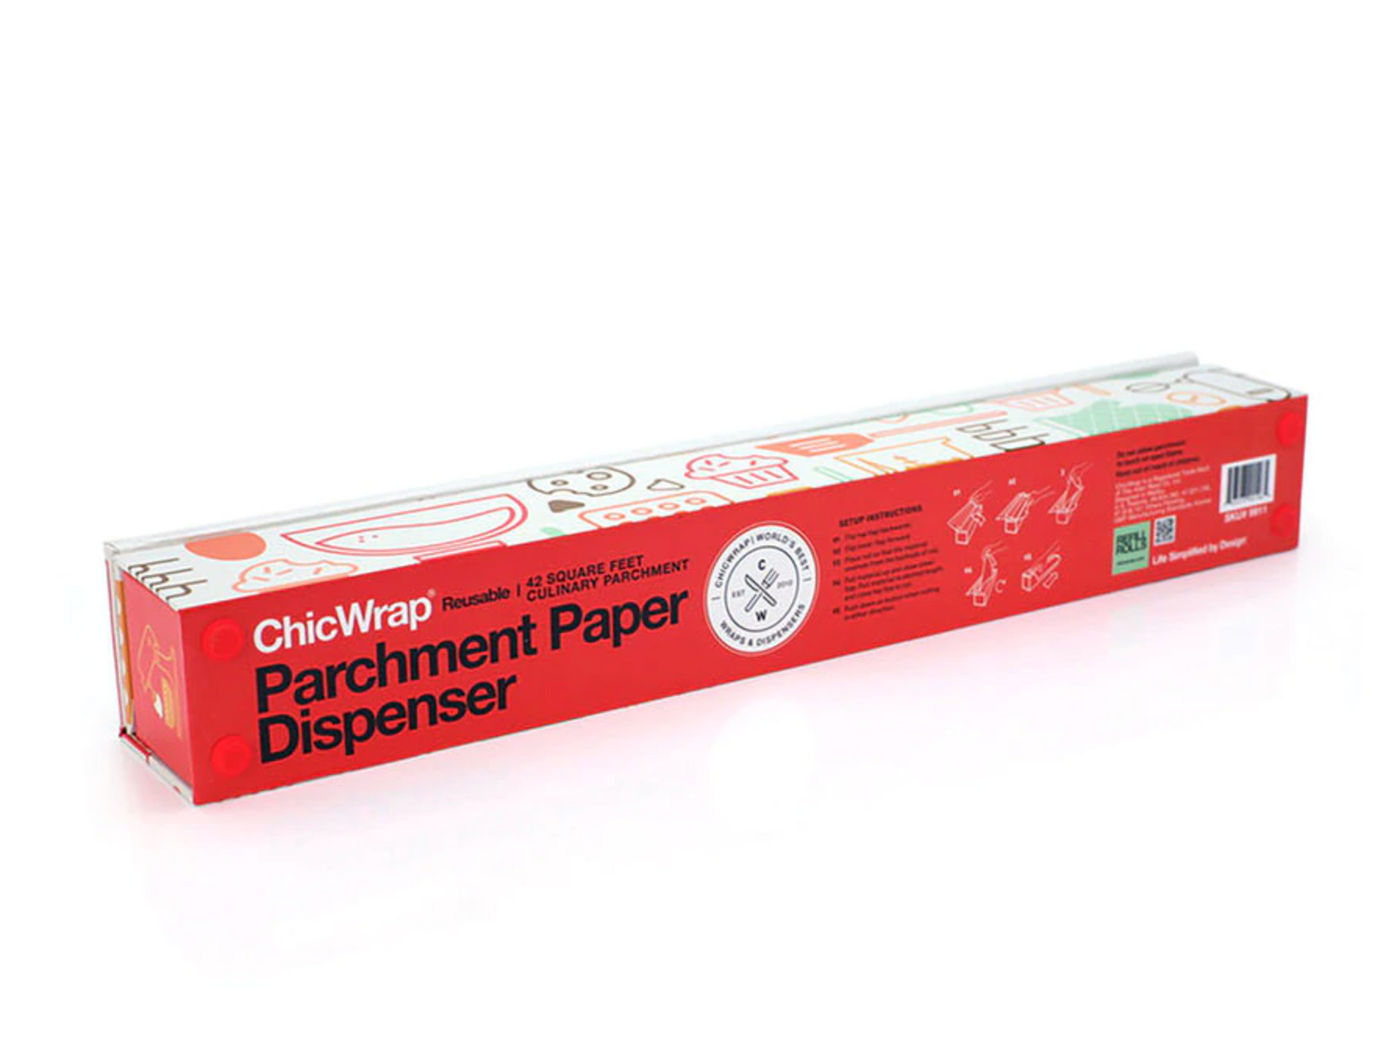 Chicwrap Parchment Paper Dispenser